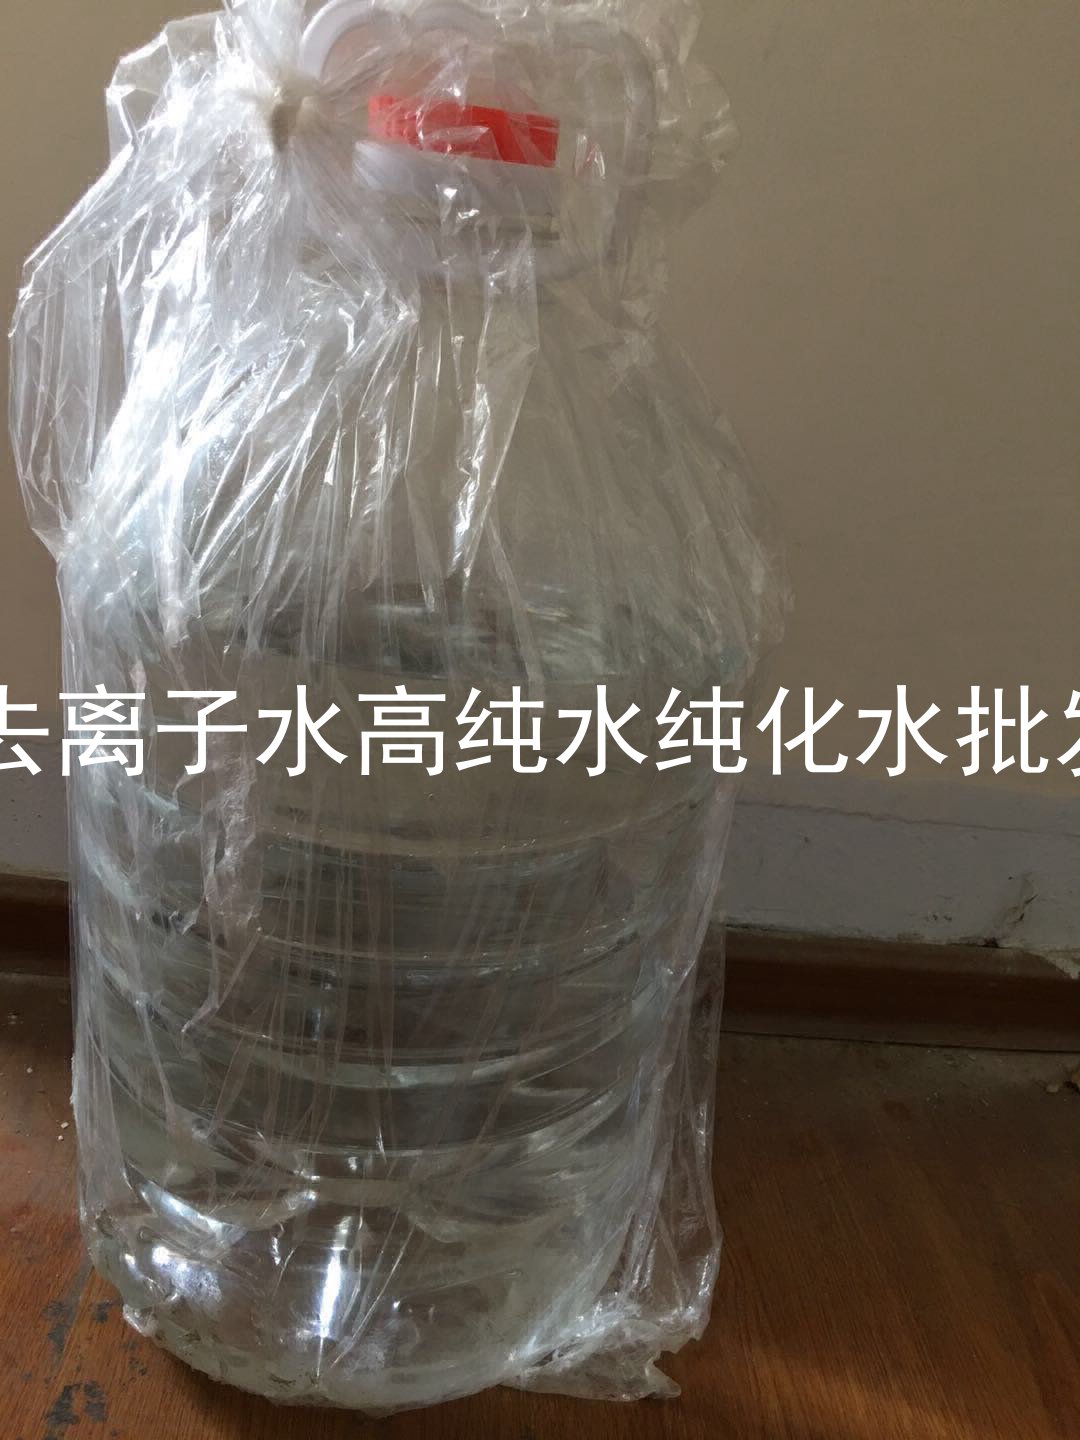 武汉实验室蒸馏水装置图_蒸馏水25KG的有吗_没有蒸馏水用什么代替